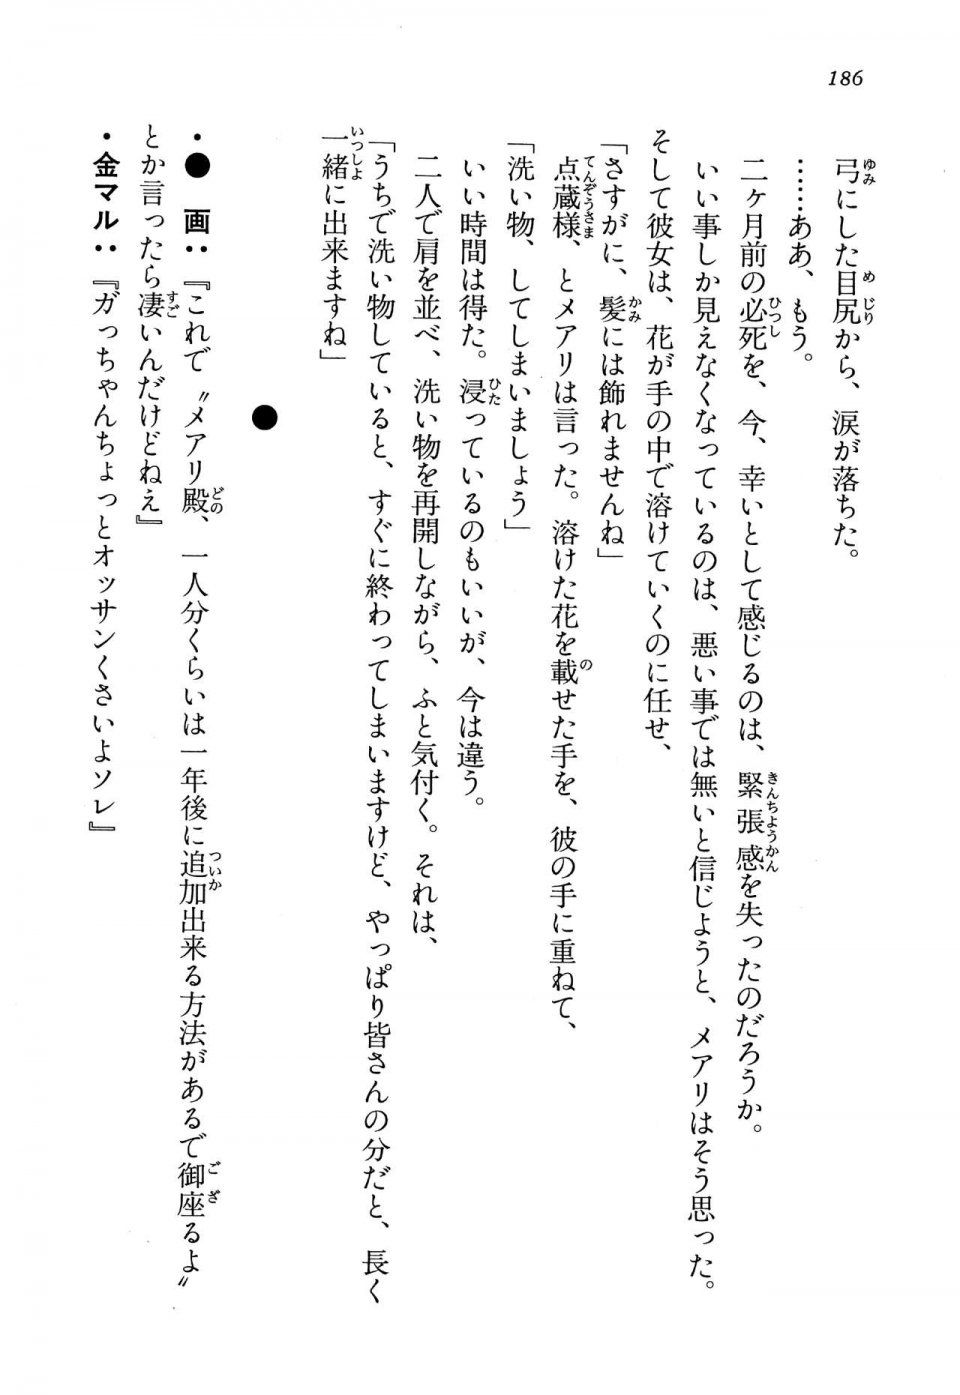 Kyoukai Senjou no Horizon LN Vol 13(6A) - Photo #186